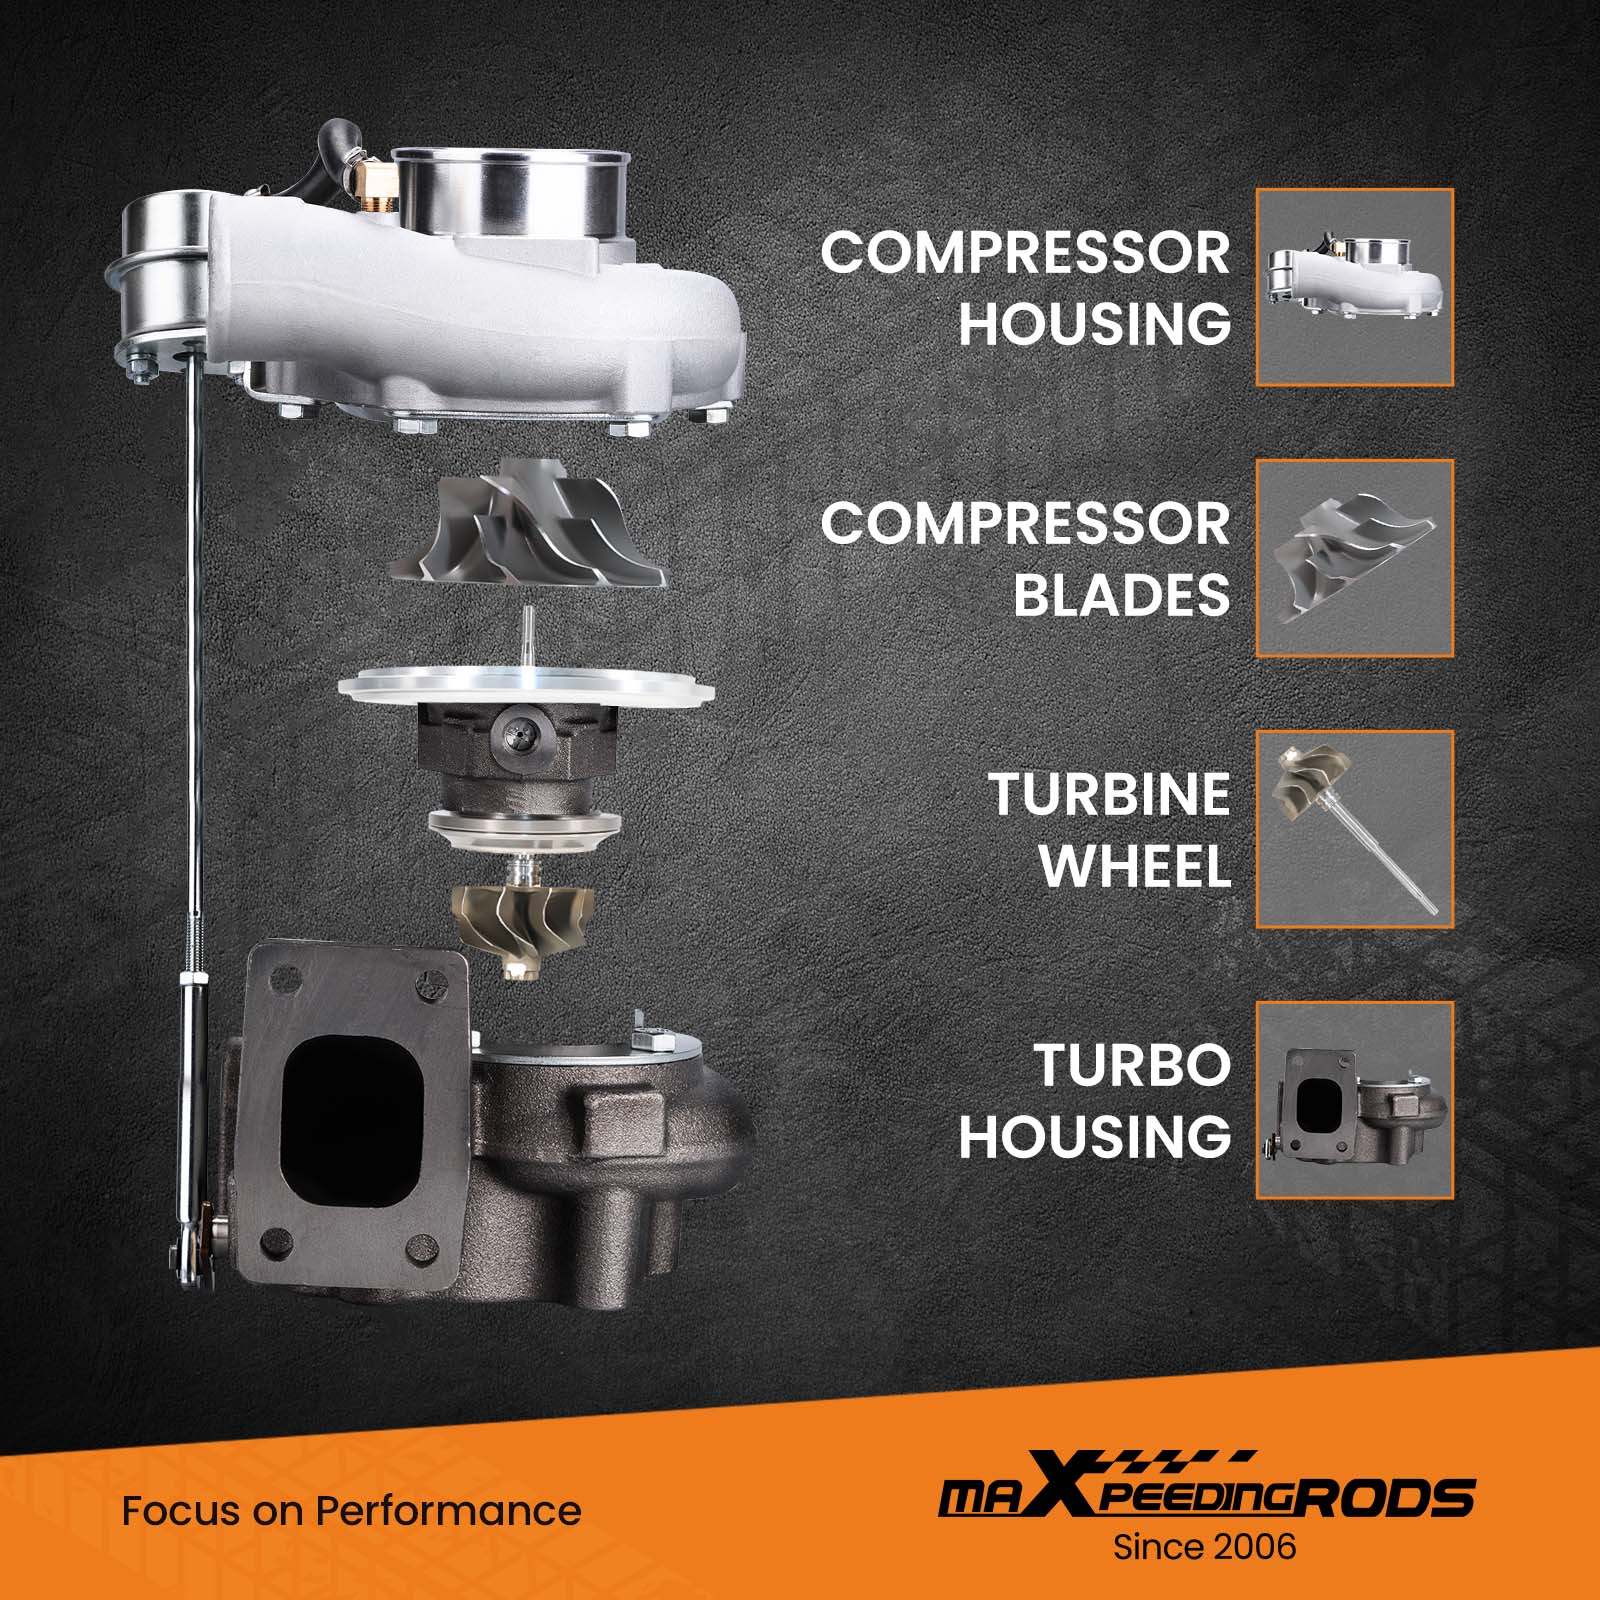 RESO - Turbo hitzeschild T3 turbo decke fit für t2 t25 t28 gt28 gt30 gt35  und die meisten t3 turbo 100% volle TITAN - AliExpress